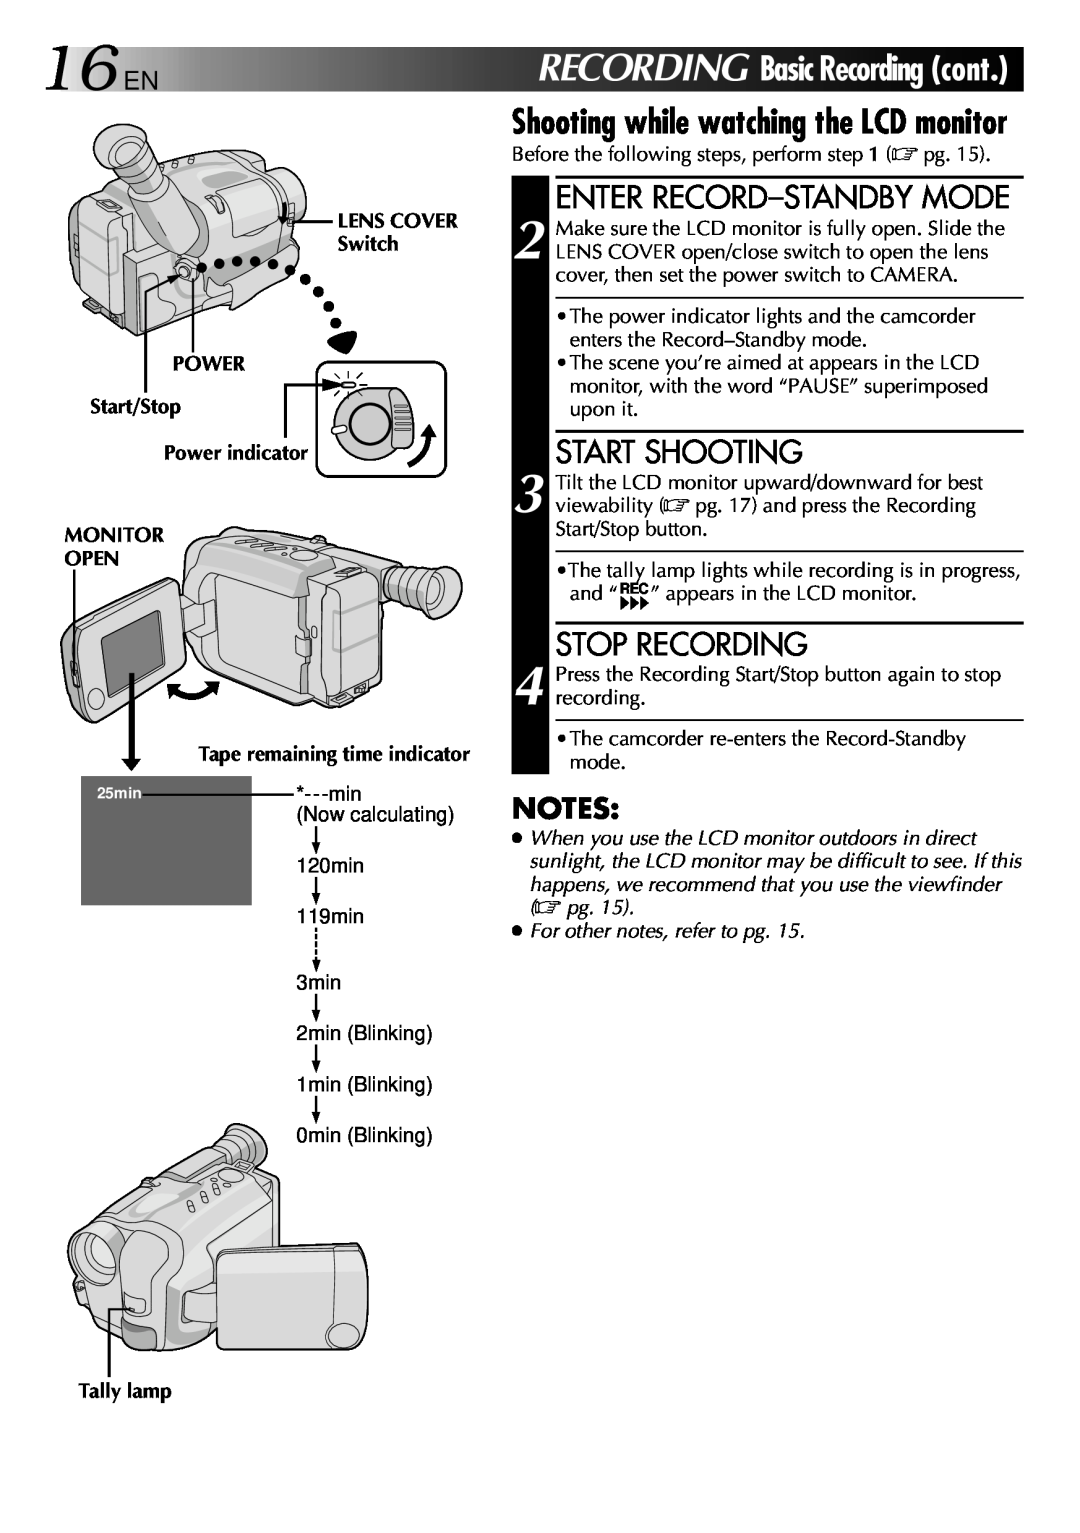 JVC GR-AXM70 manual Enter Record-Standby Mode, Start Shooting, Stop Recording, 16EN RECORDING BasicRecordingcont 